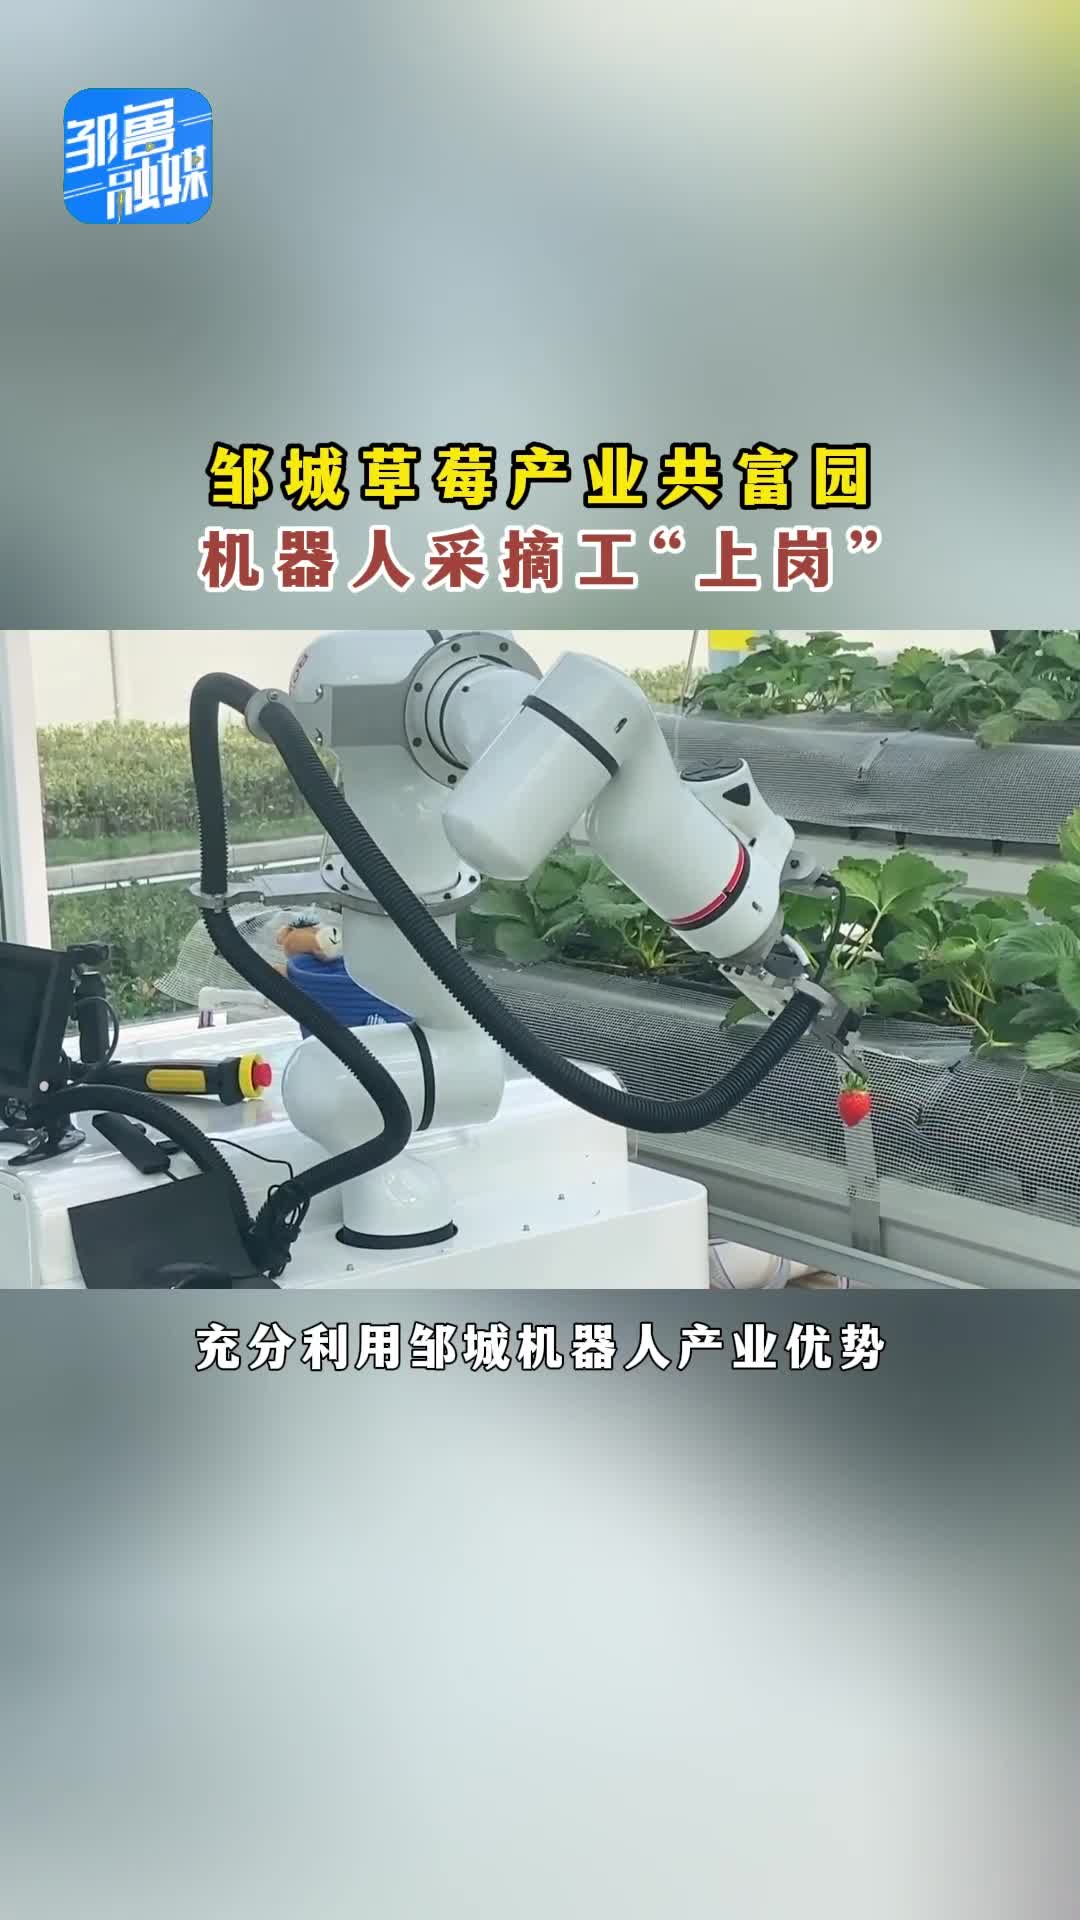 【邹视频·新闻】36秒|邹城草莓产业共富园 机器人采摘工“上岗”